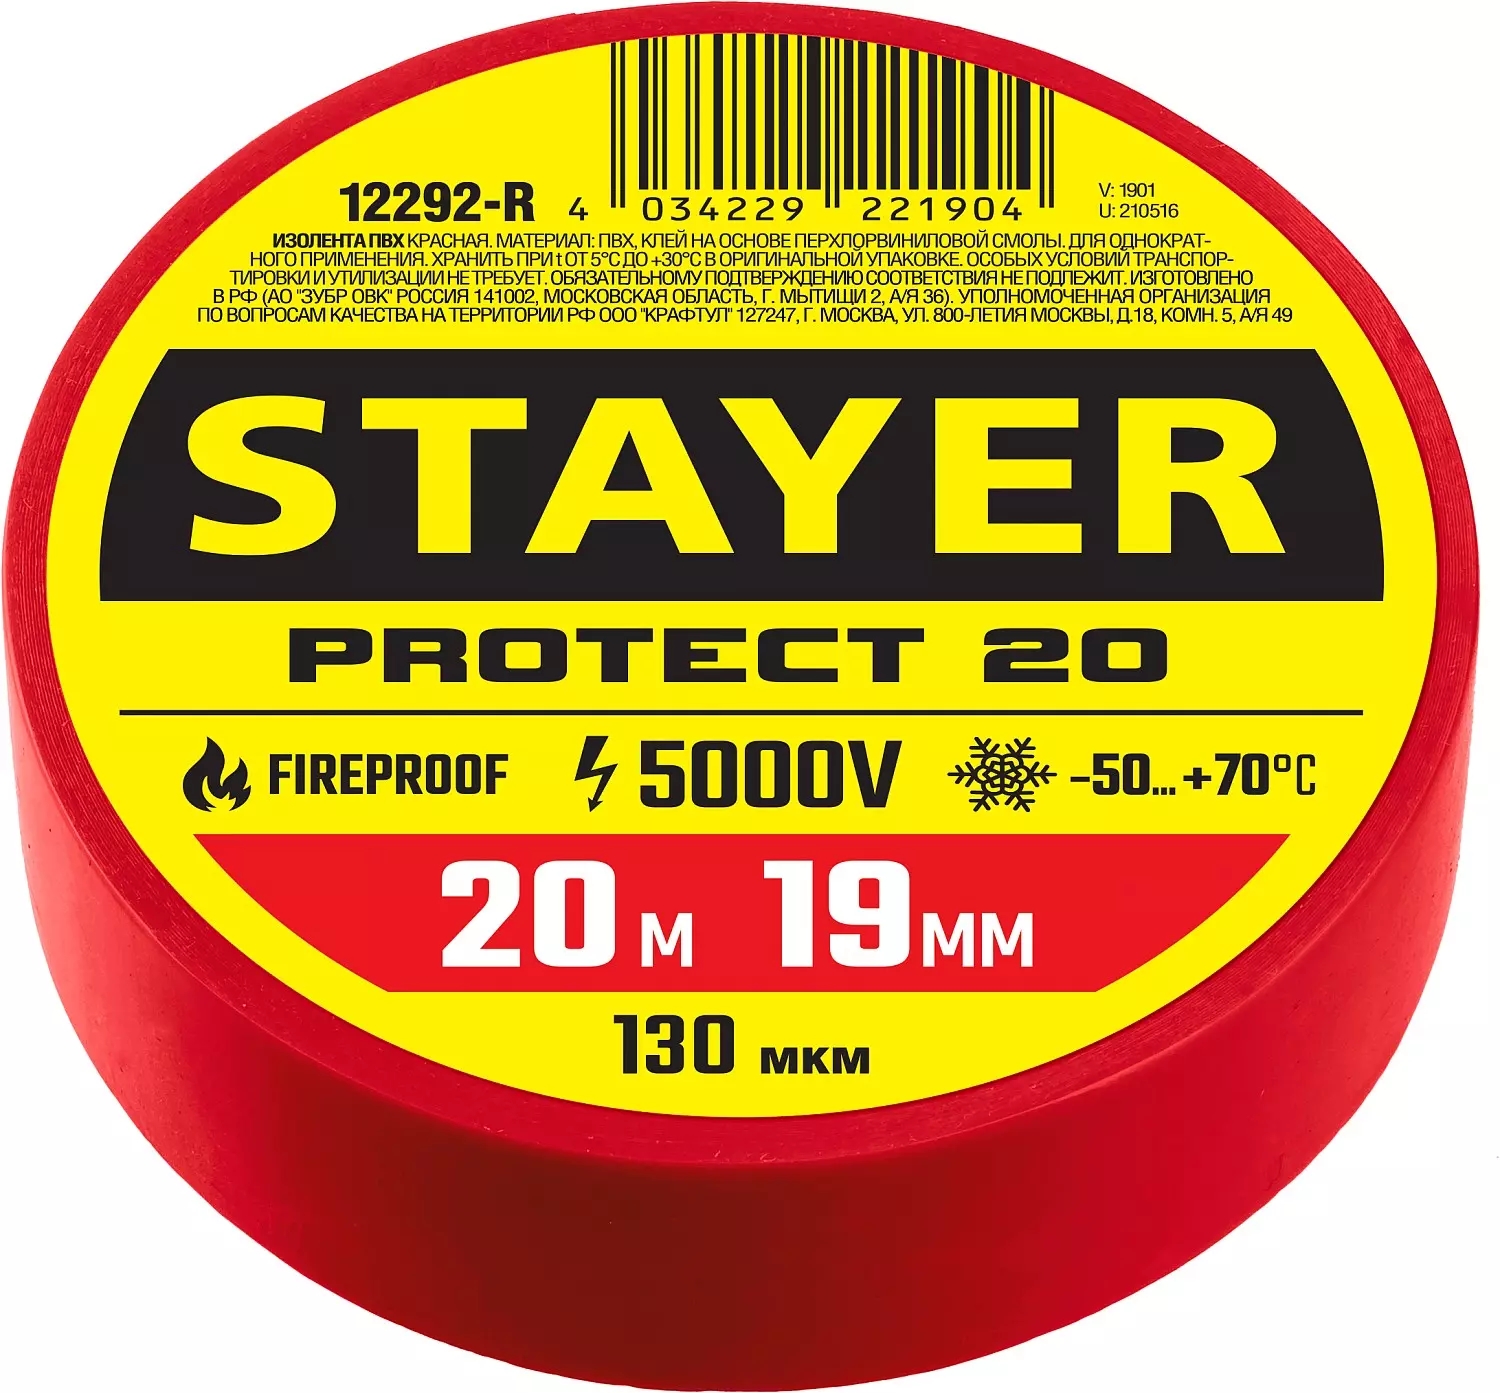 Изолента ПВХ 5000 В красная 19 мм 20 м Stayer Protect-20 12292-R фото